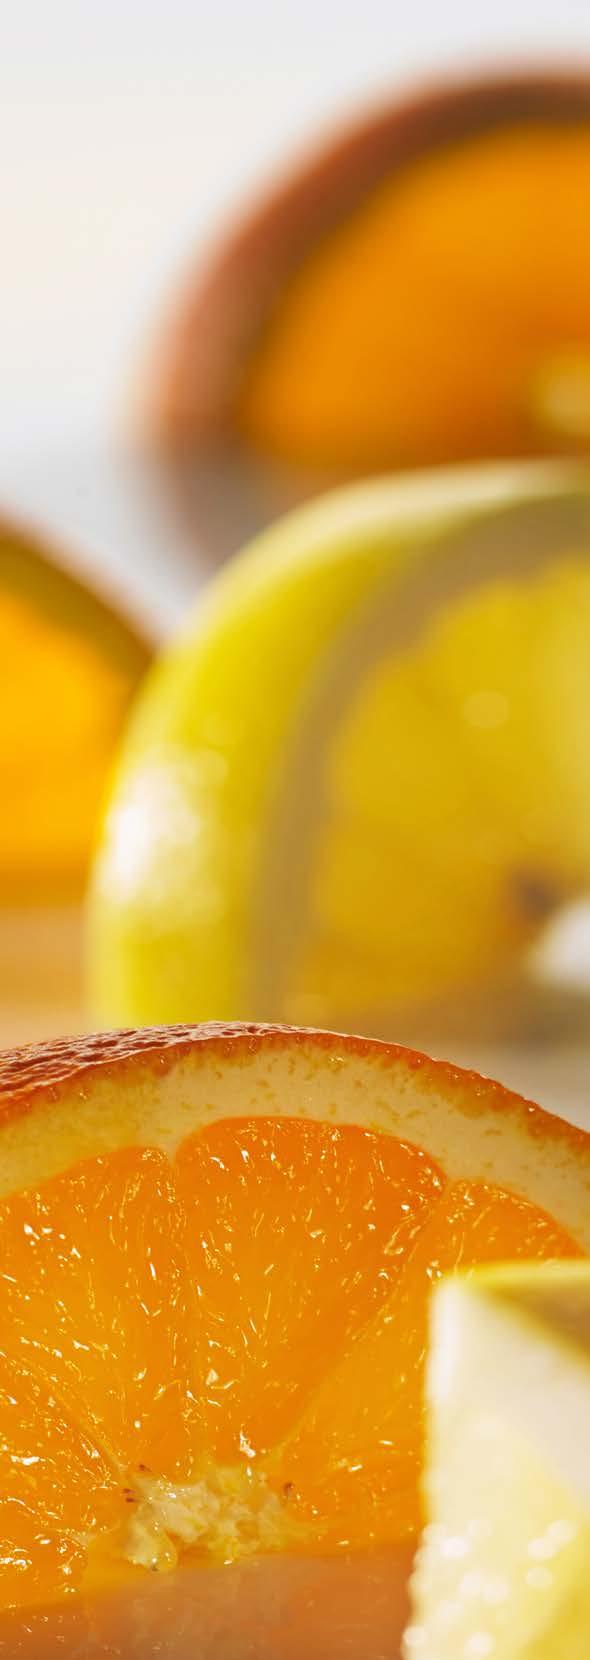 Cytrusowe orzeźwienie SKŁADNIKI: 2 porcje 1 biały grejpfrut 1 pomarańcza 1 cytryna 1 limonka KOKTAJL OWOCOWY SPOSÓB WYKONANIA: Z cytrusów wycisnąć sok i wymieszać. Przed podaniem można schłodzić.